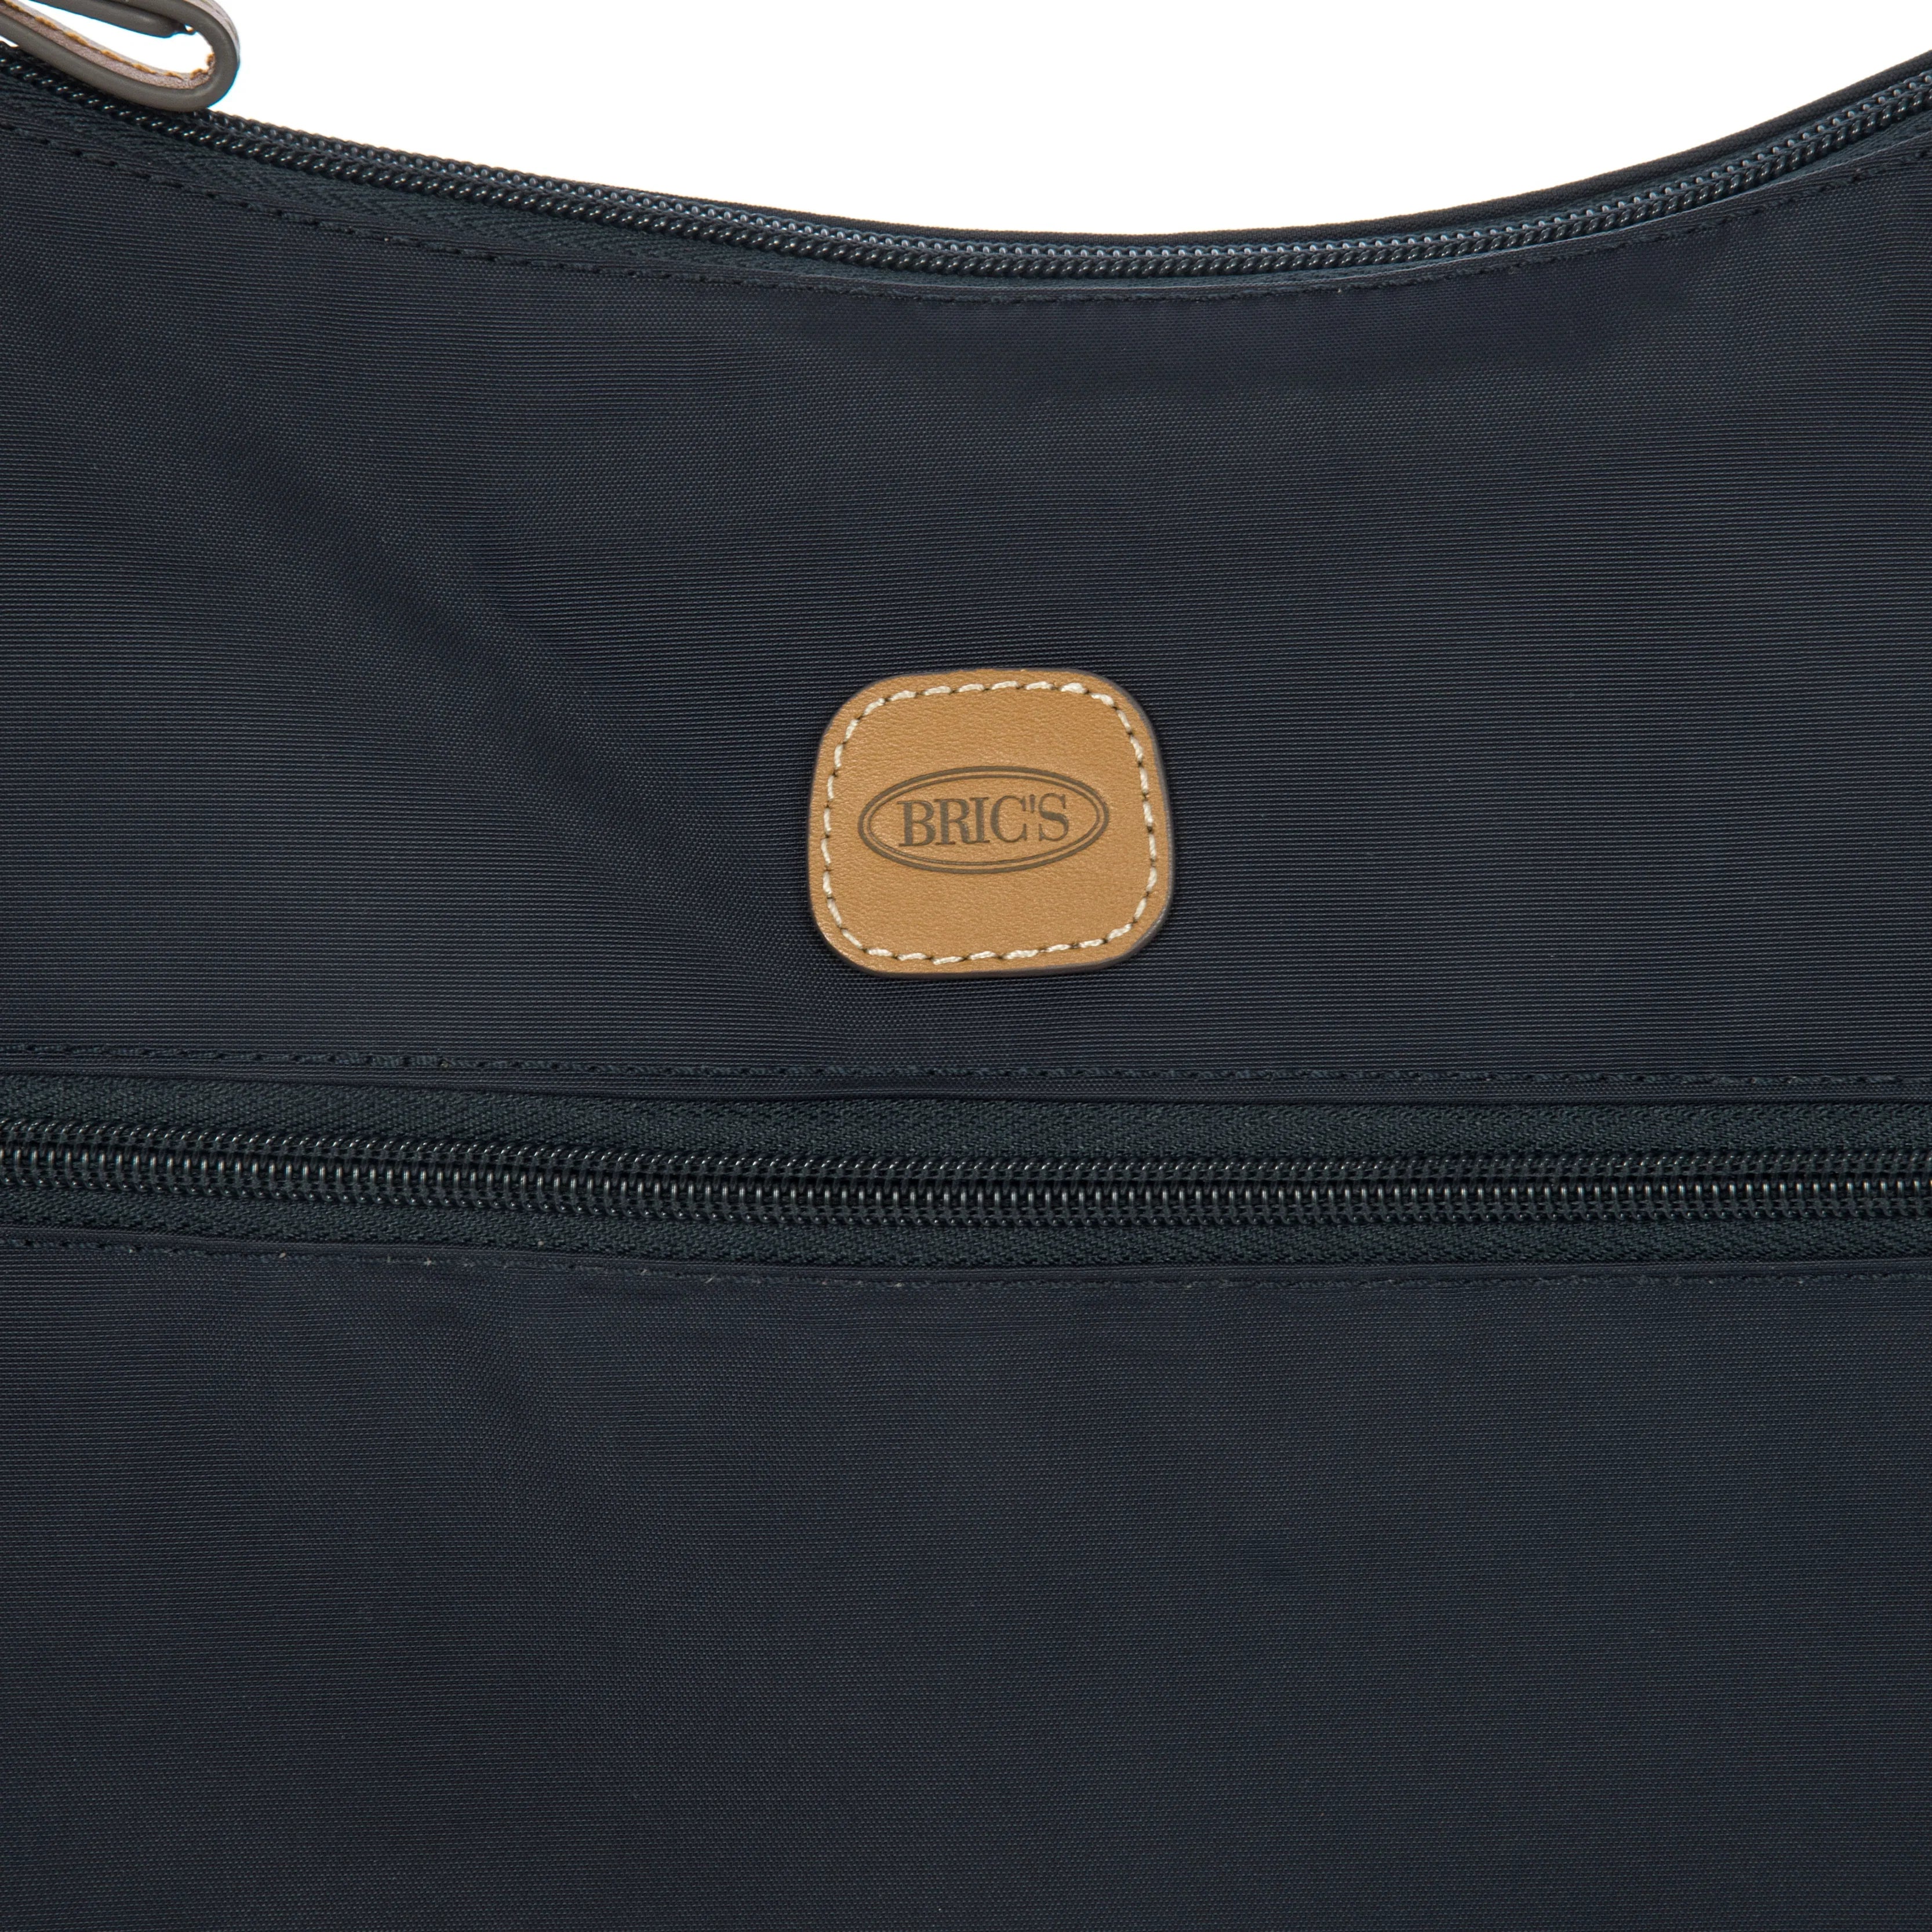 Brics X-Bag shoulder bag 38 cm - Black